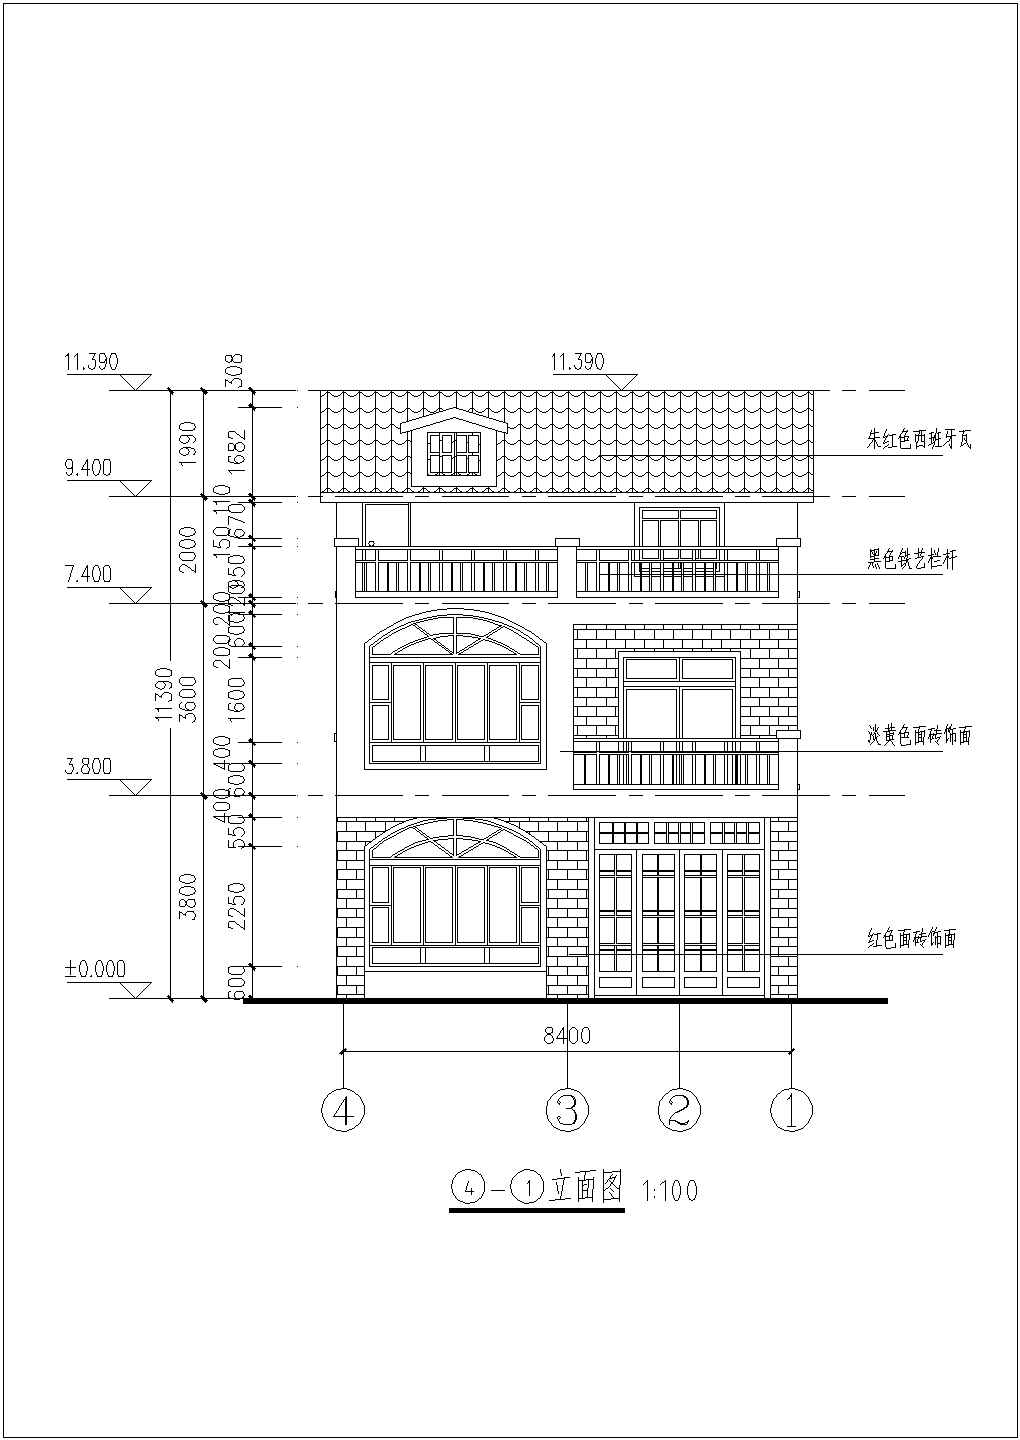 三层长08.40米 宽11.00米农村自建房建筑施工图CAD平面结构图